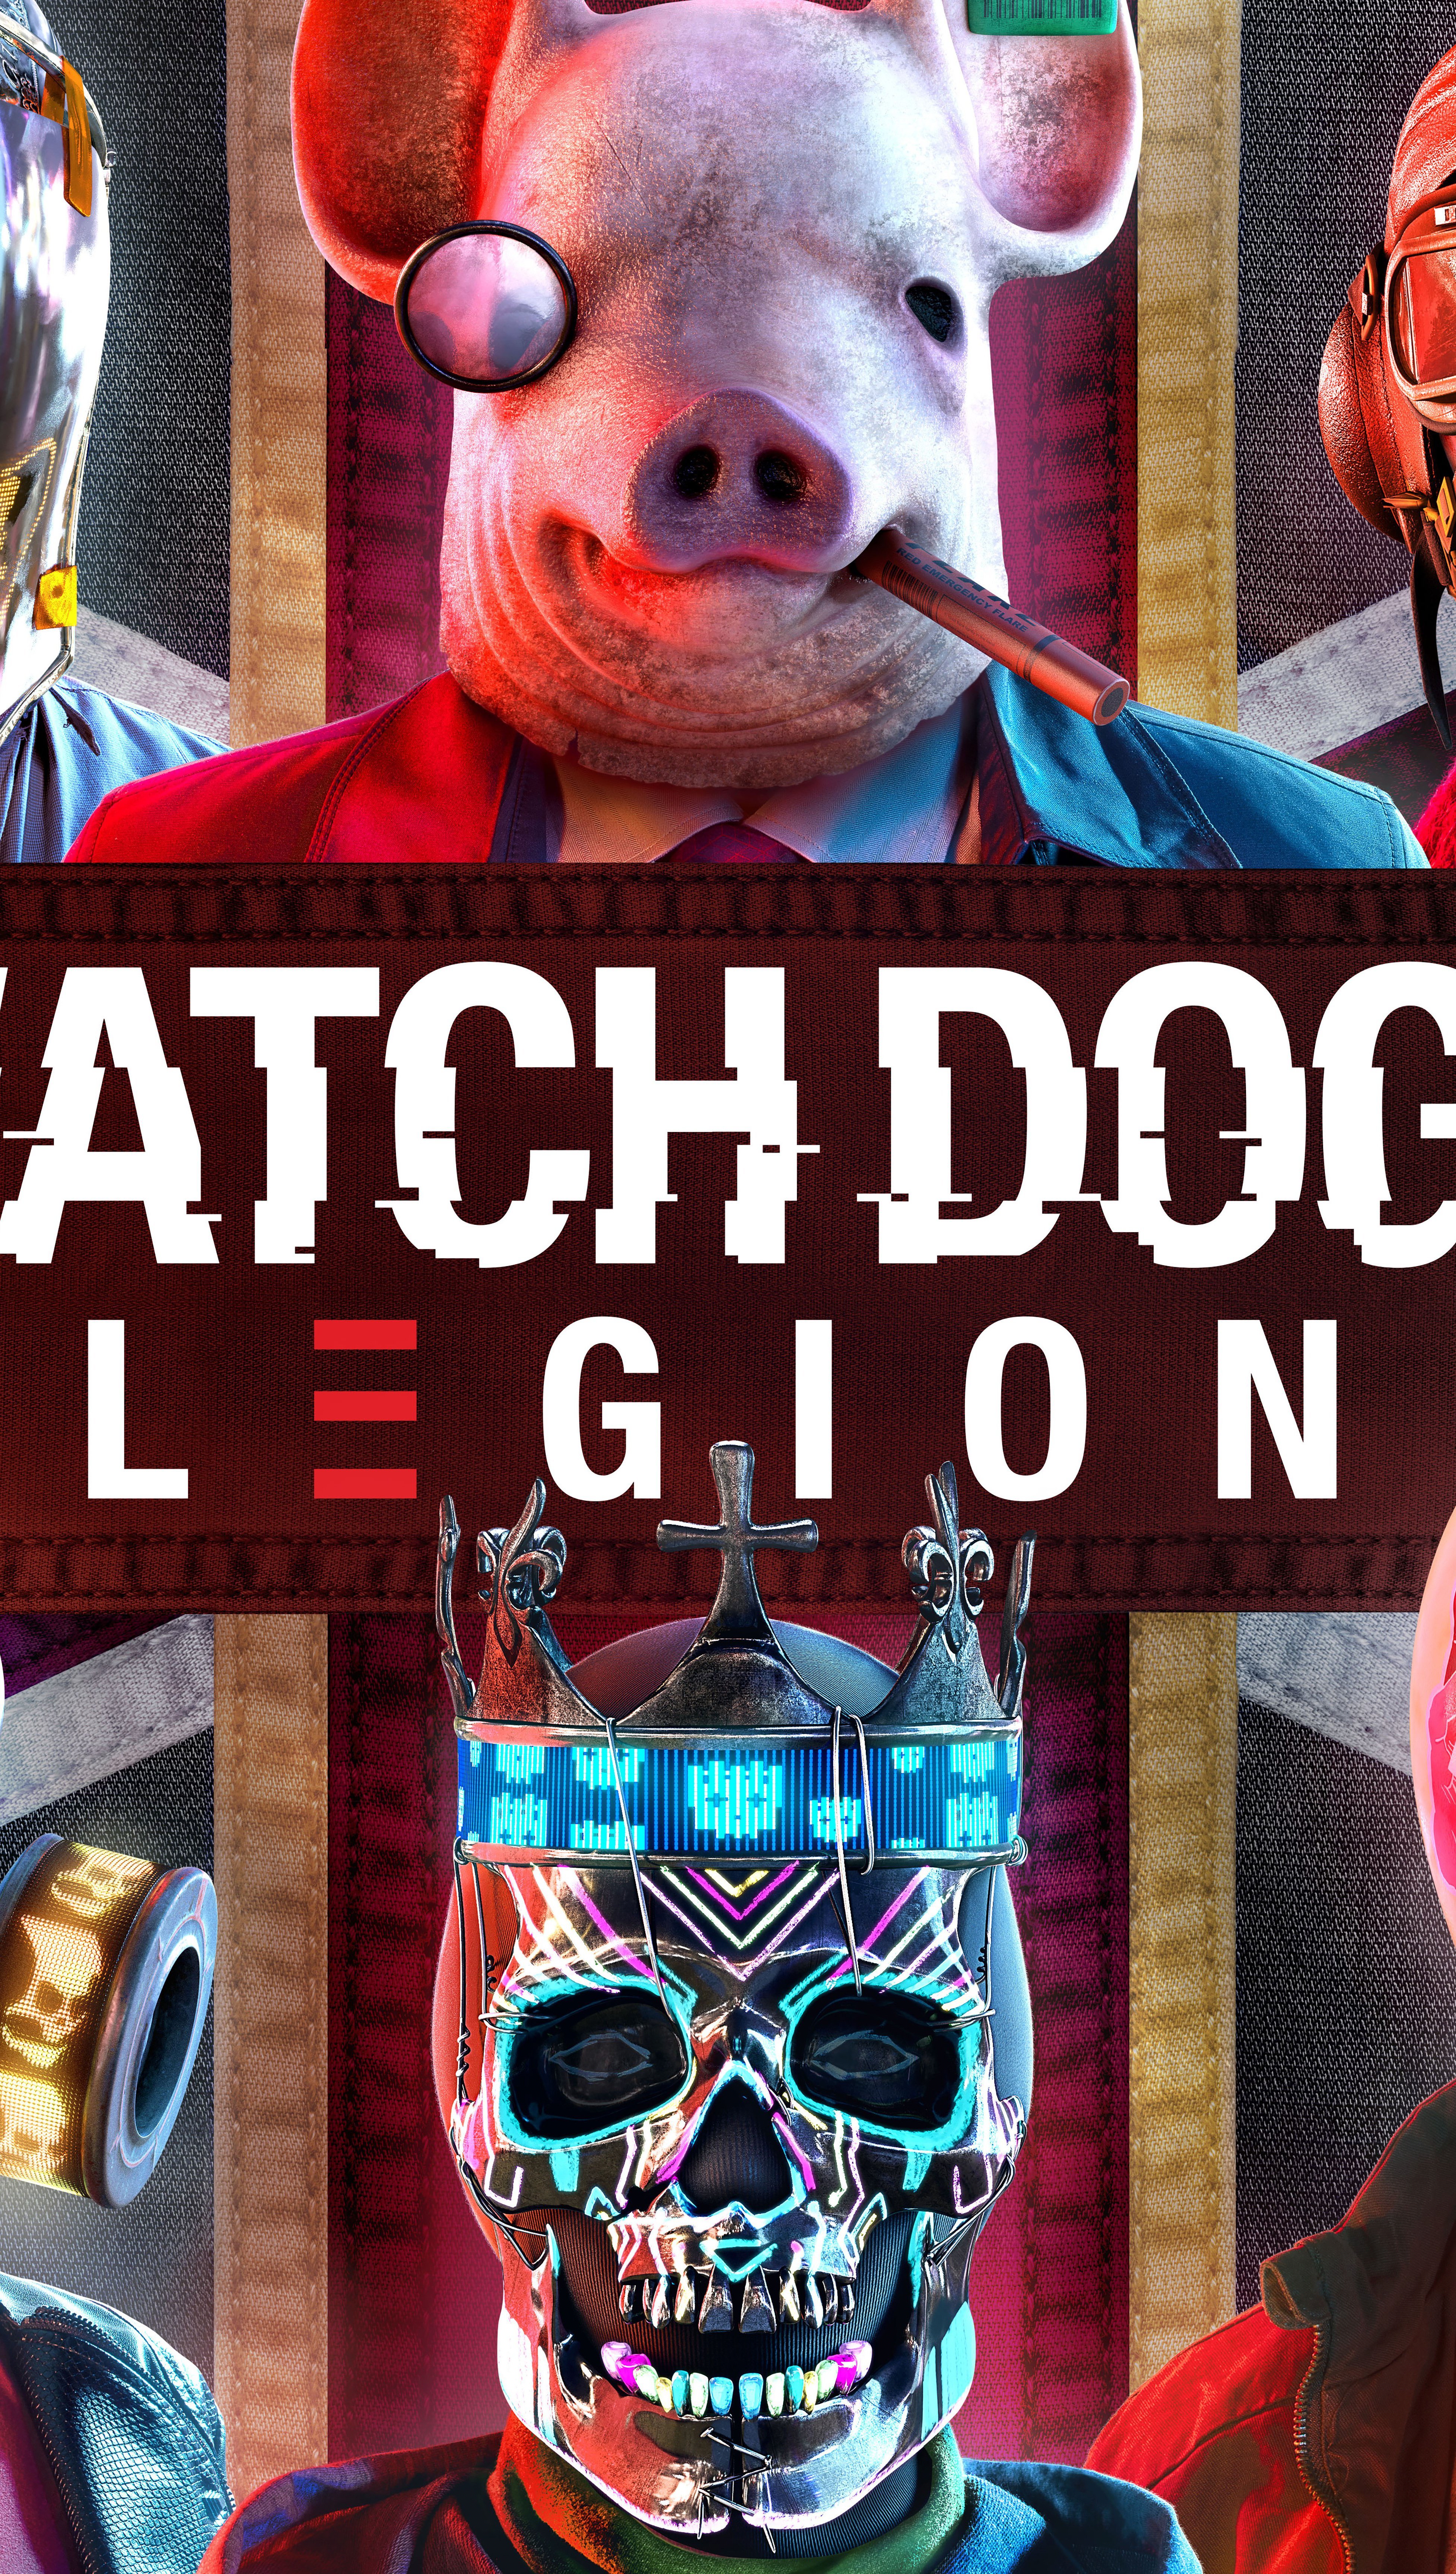 Fondos de pantalla Watch Dogs Legion Personajes Máscara Vertical